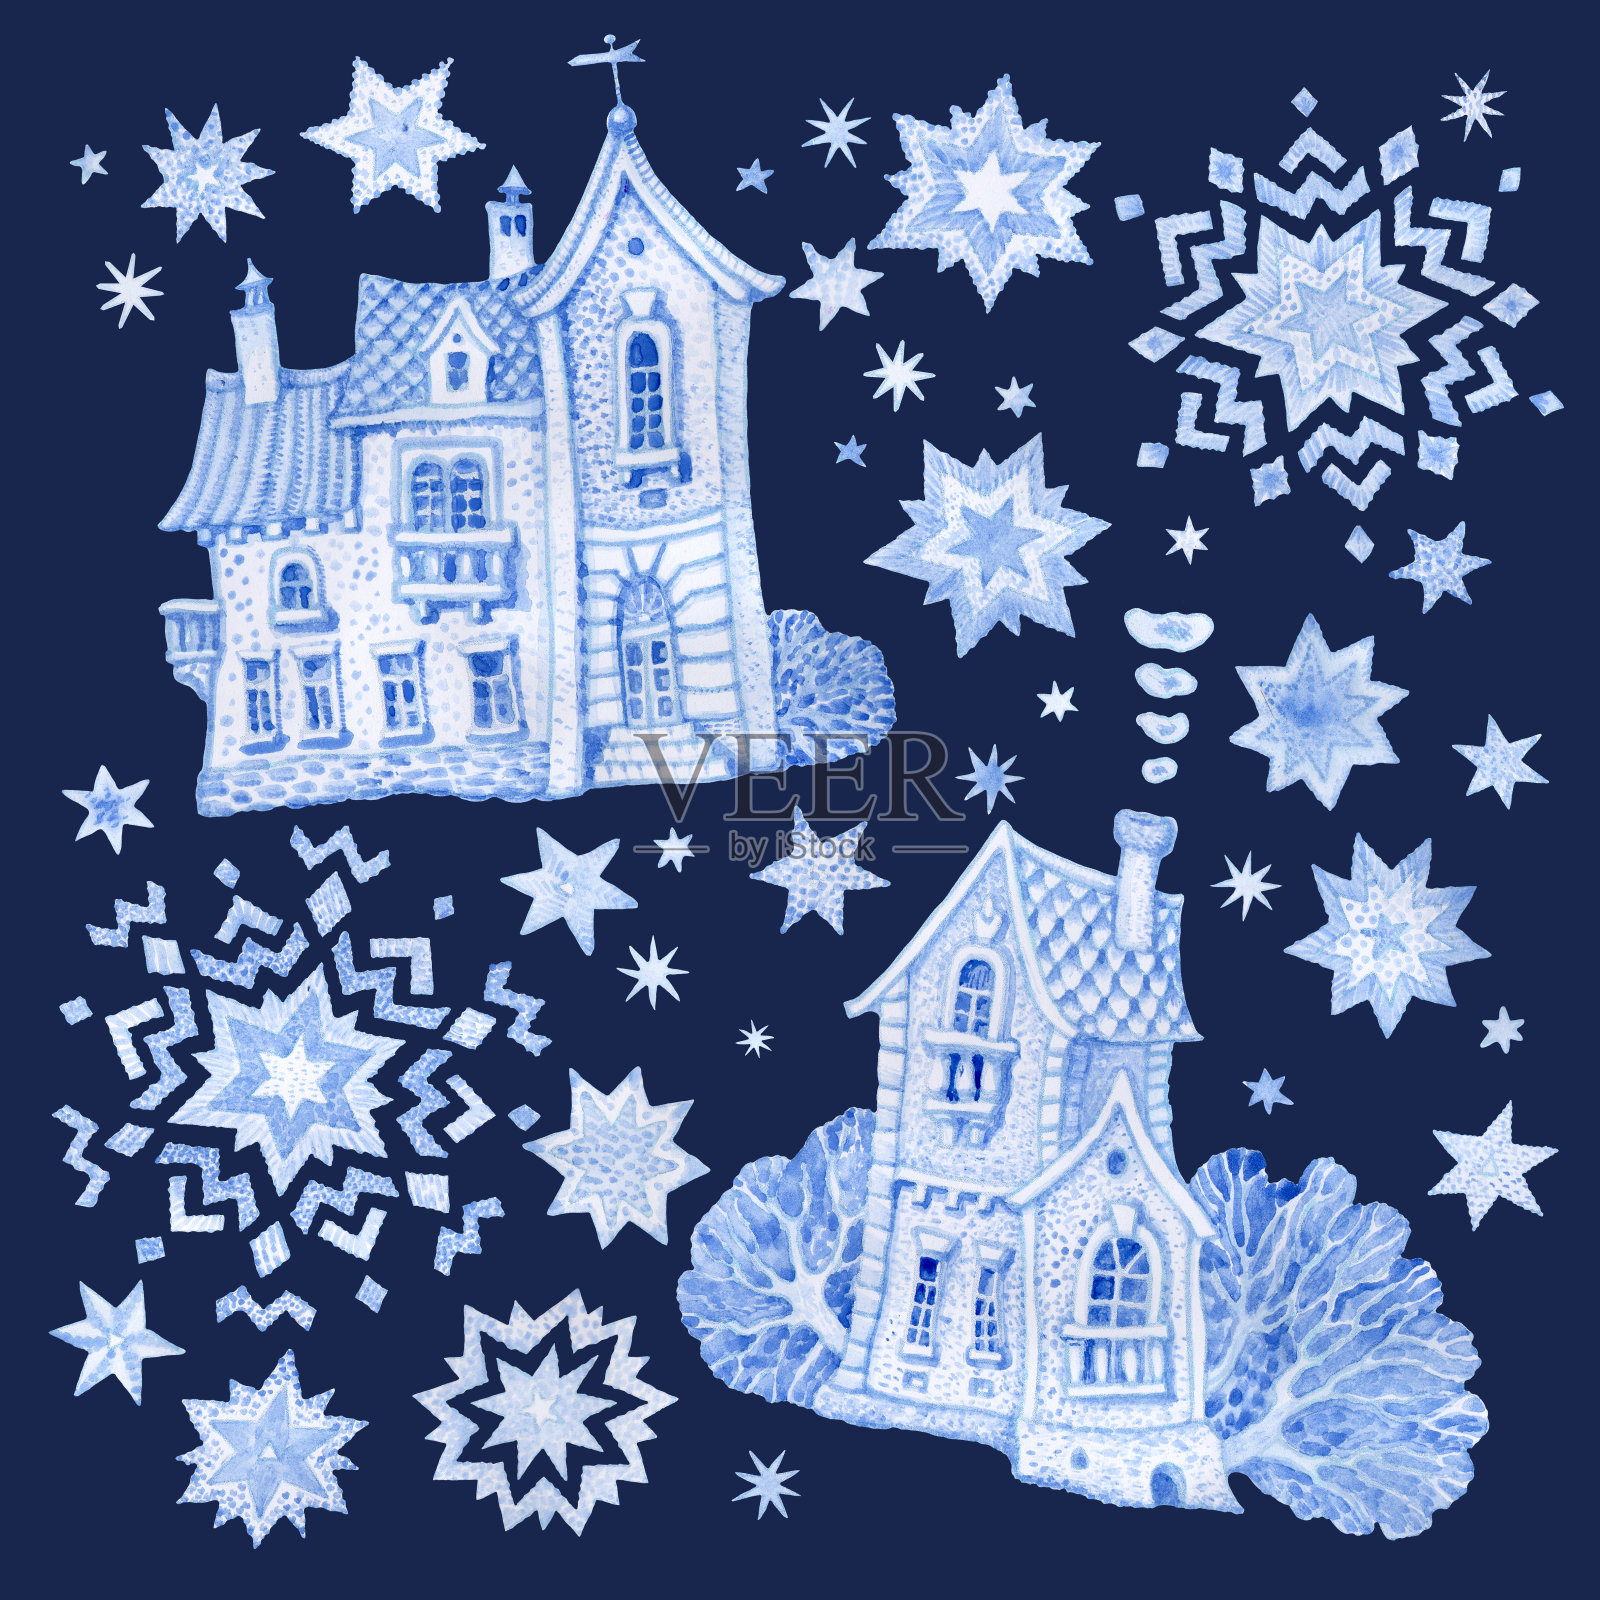 一套幻想的建筑物与圣诞星和雪花。手工绘制的蓝色水彩童话老城房子孤立在黑暗的靛蓝背景。冬季景观t恤印花。、问候卡或请帖插画图片素材